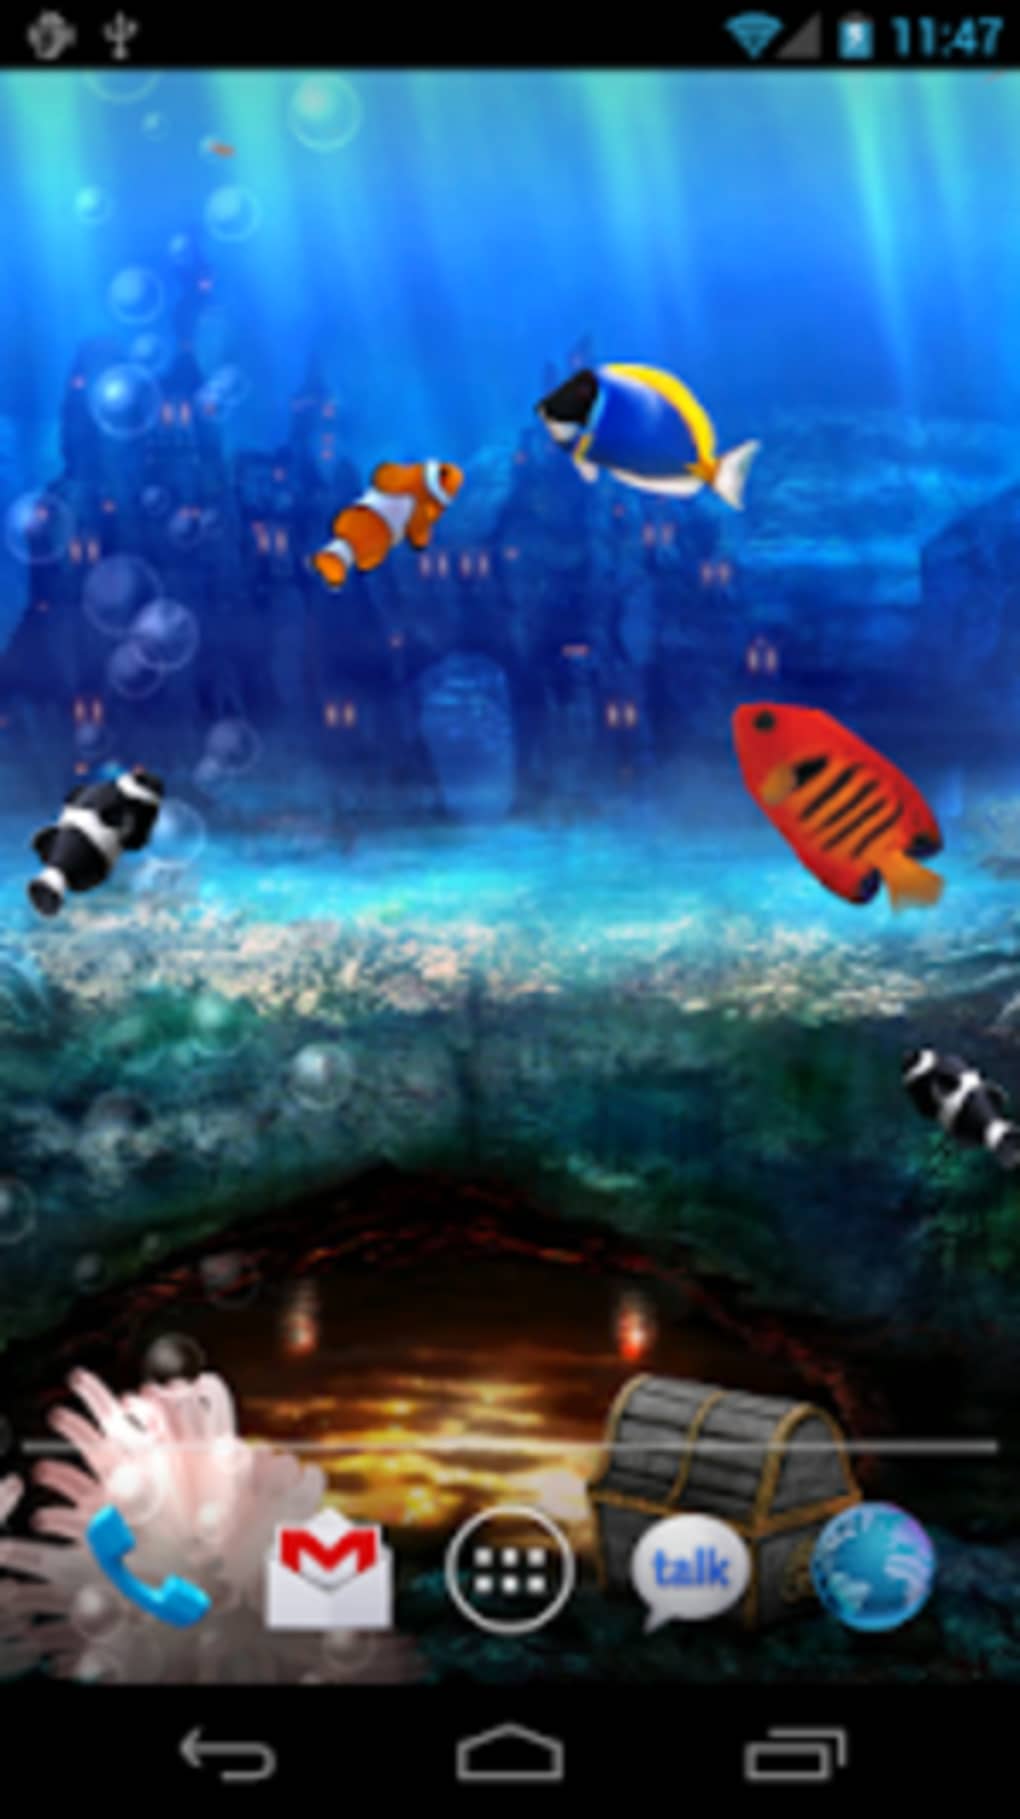 Aquarium Live Wallpaper APK for Android